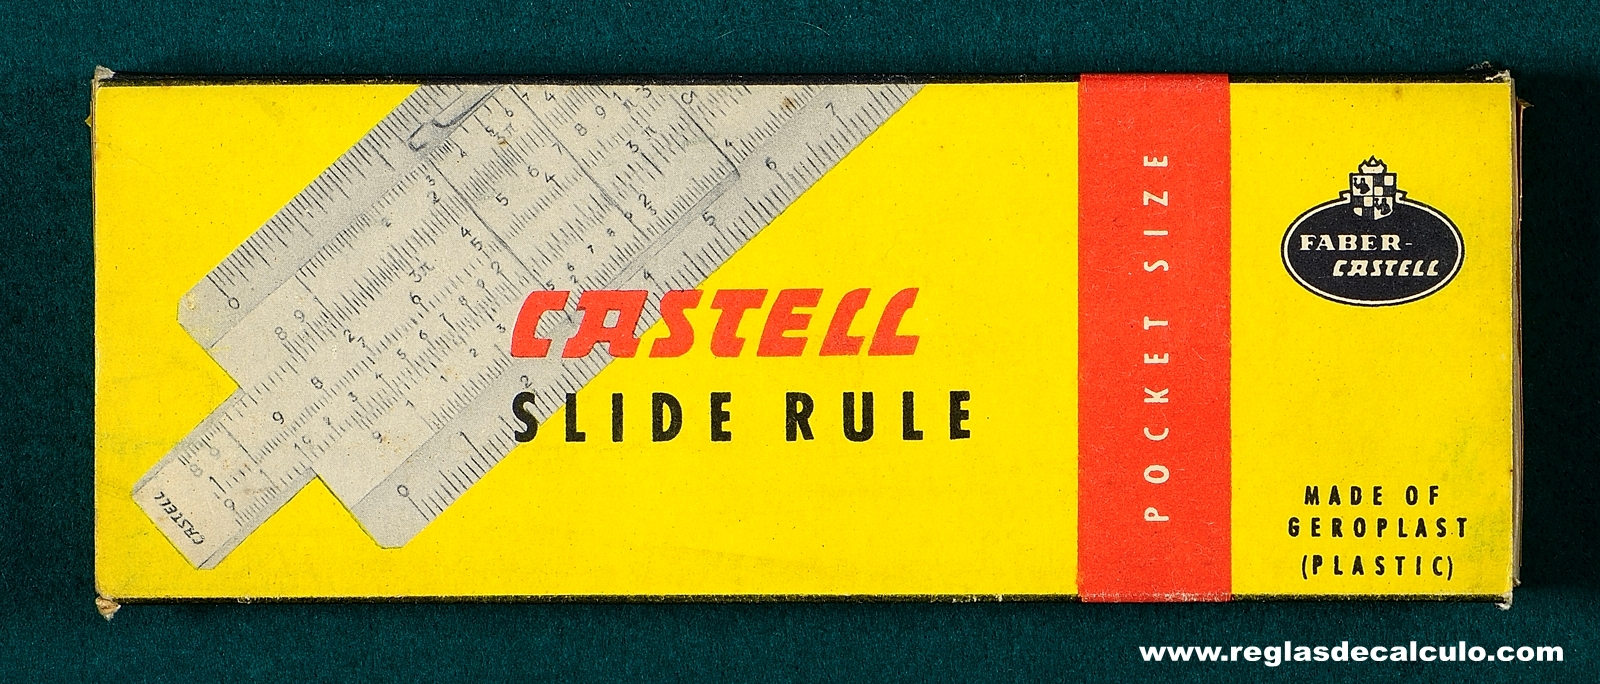 Faber Castell 67/87 Rietz Regla de Calculo Slide rule